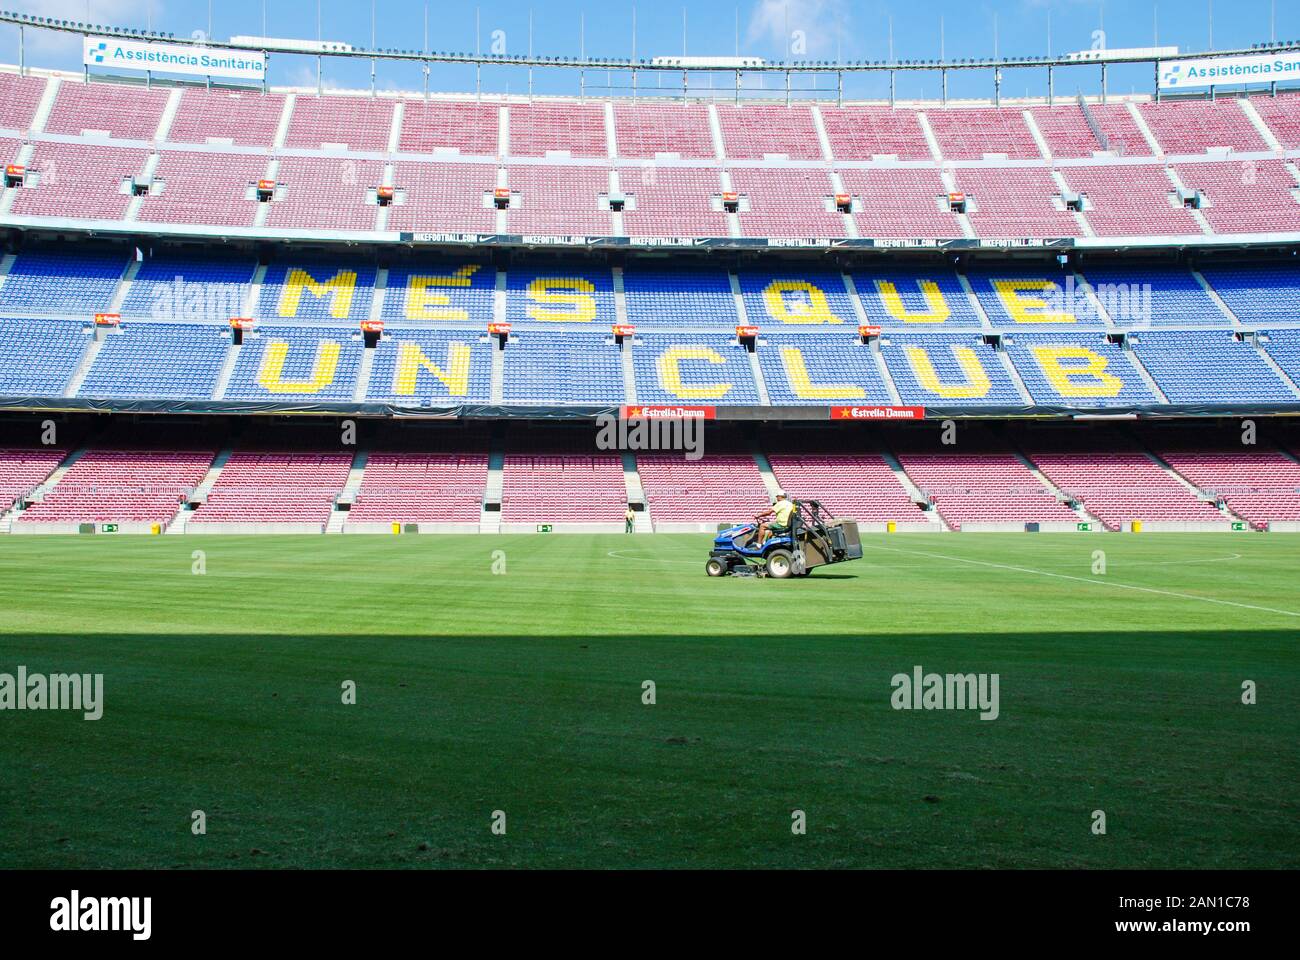 Spanien, BARCELONA - JULI 2013: Ein Blick auf das Heimstadion des FC Barcelona, das Stadion Camp Nou und den Rasenmähertraktor. Stockfoto